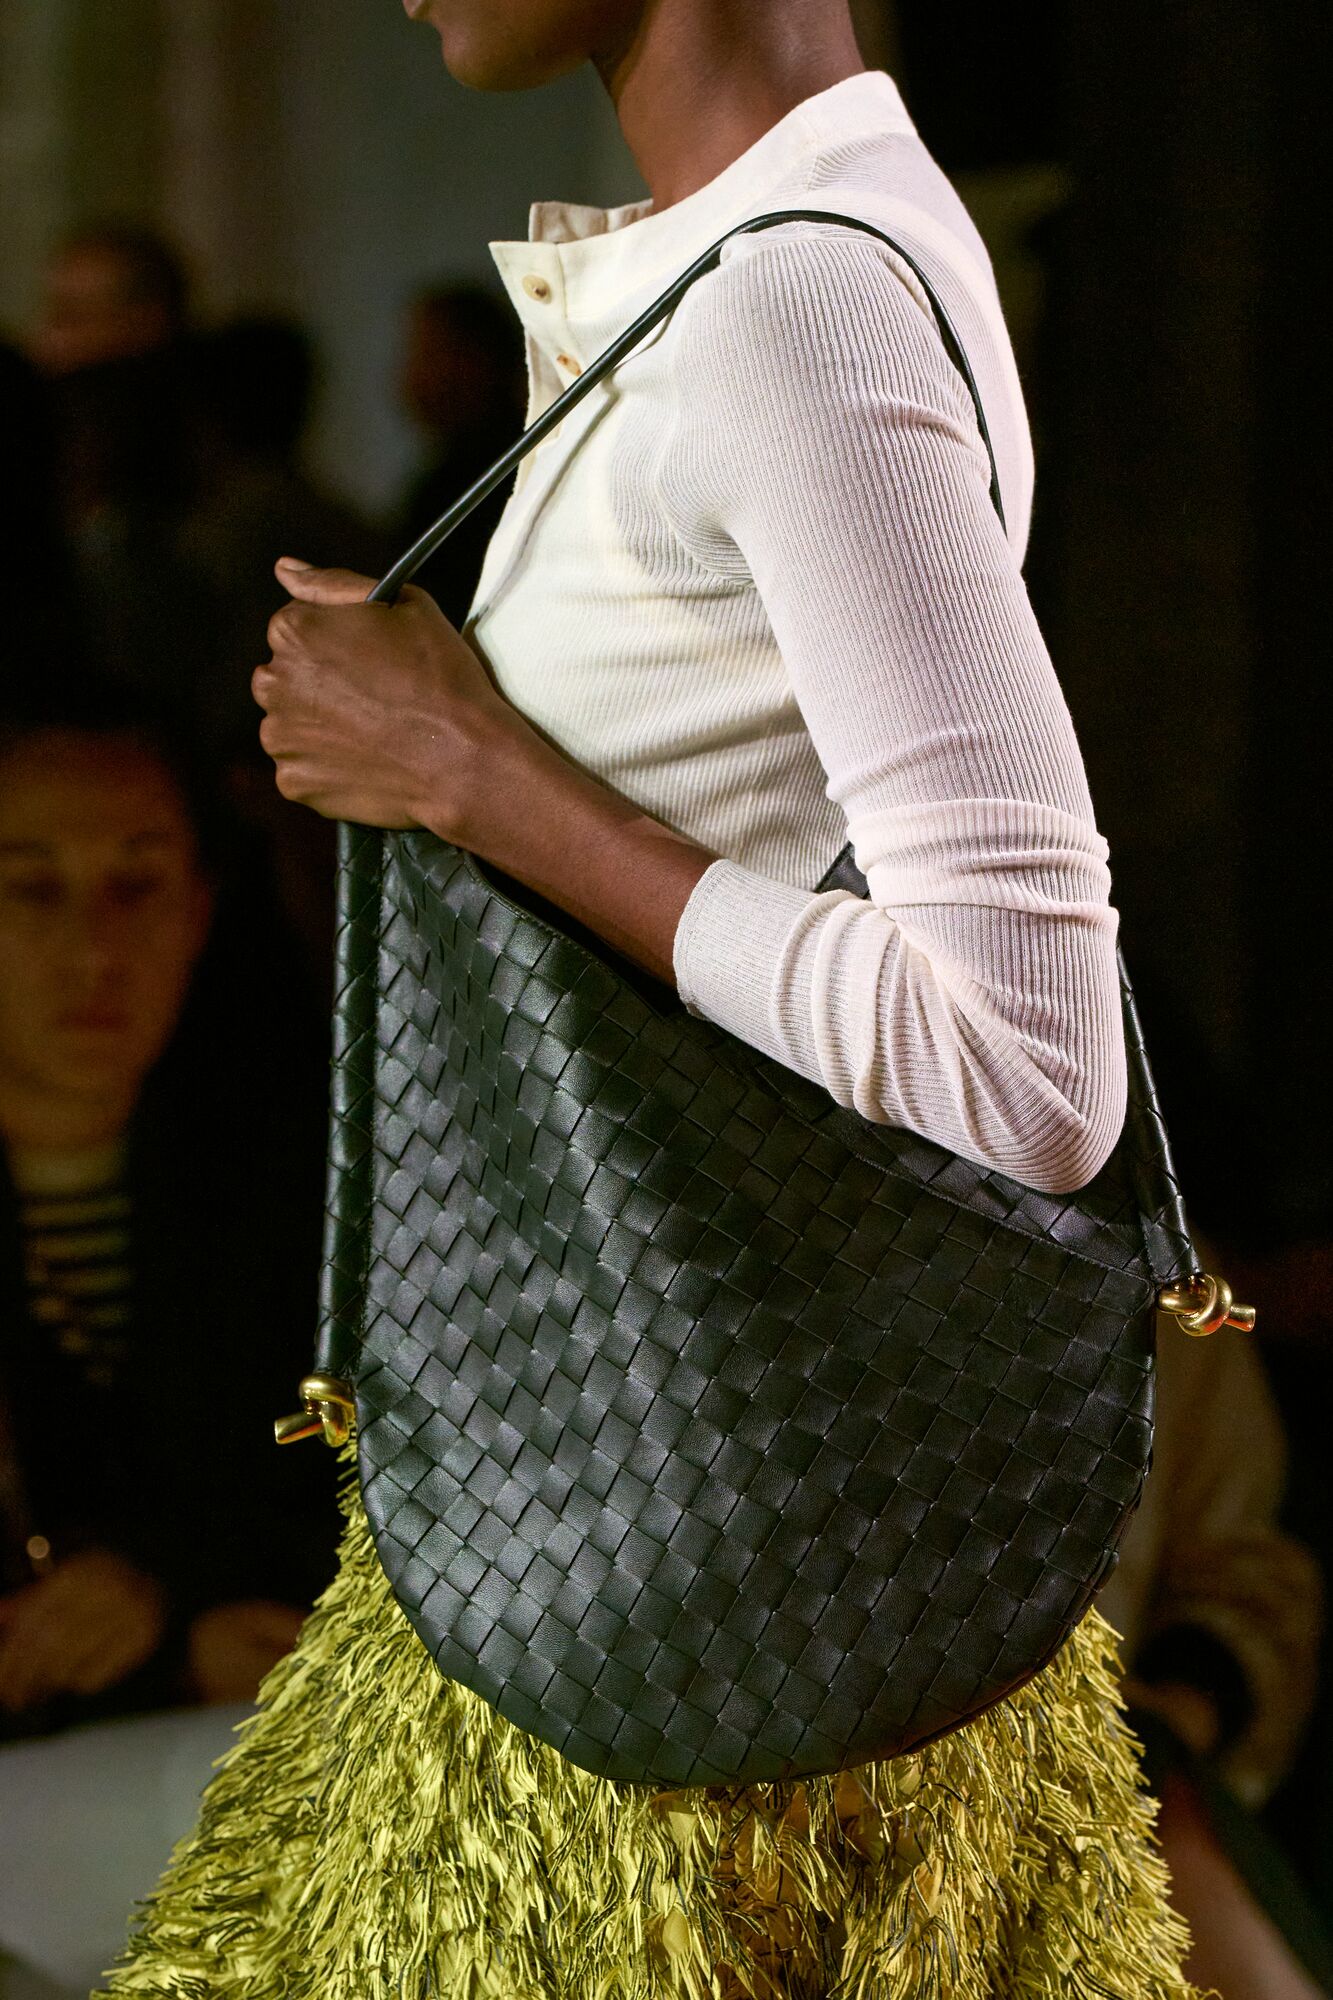 Bottega Veneta Drops New Hop Bag for Winter 2023